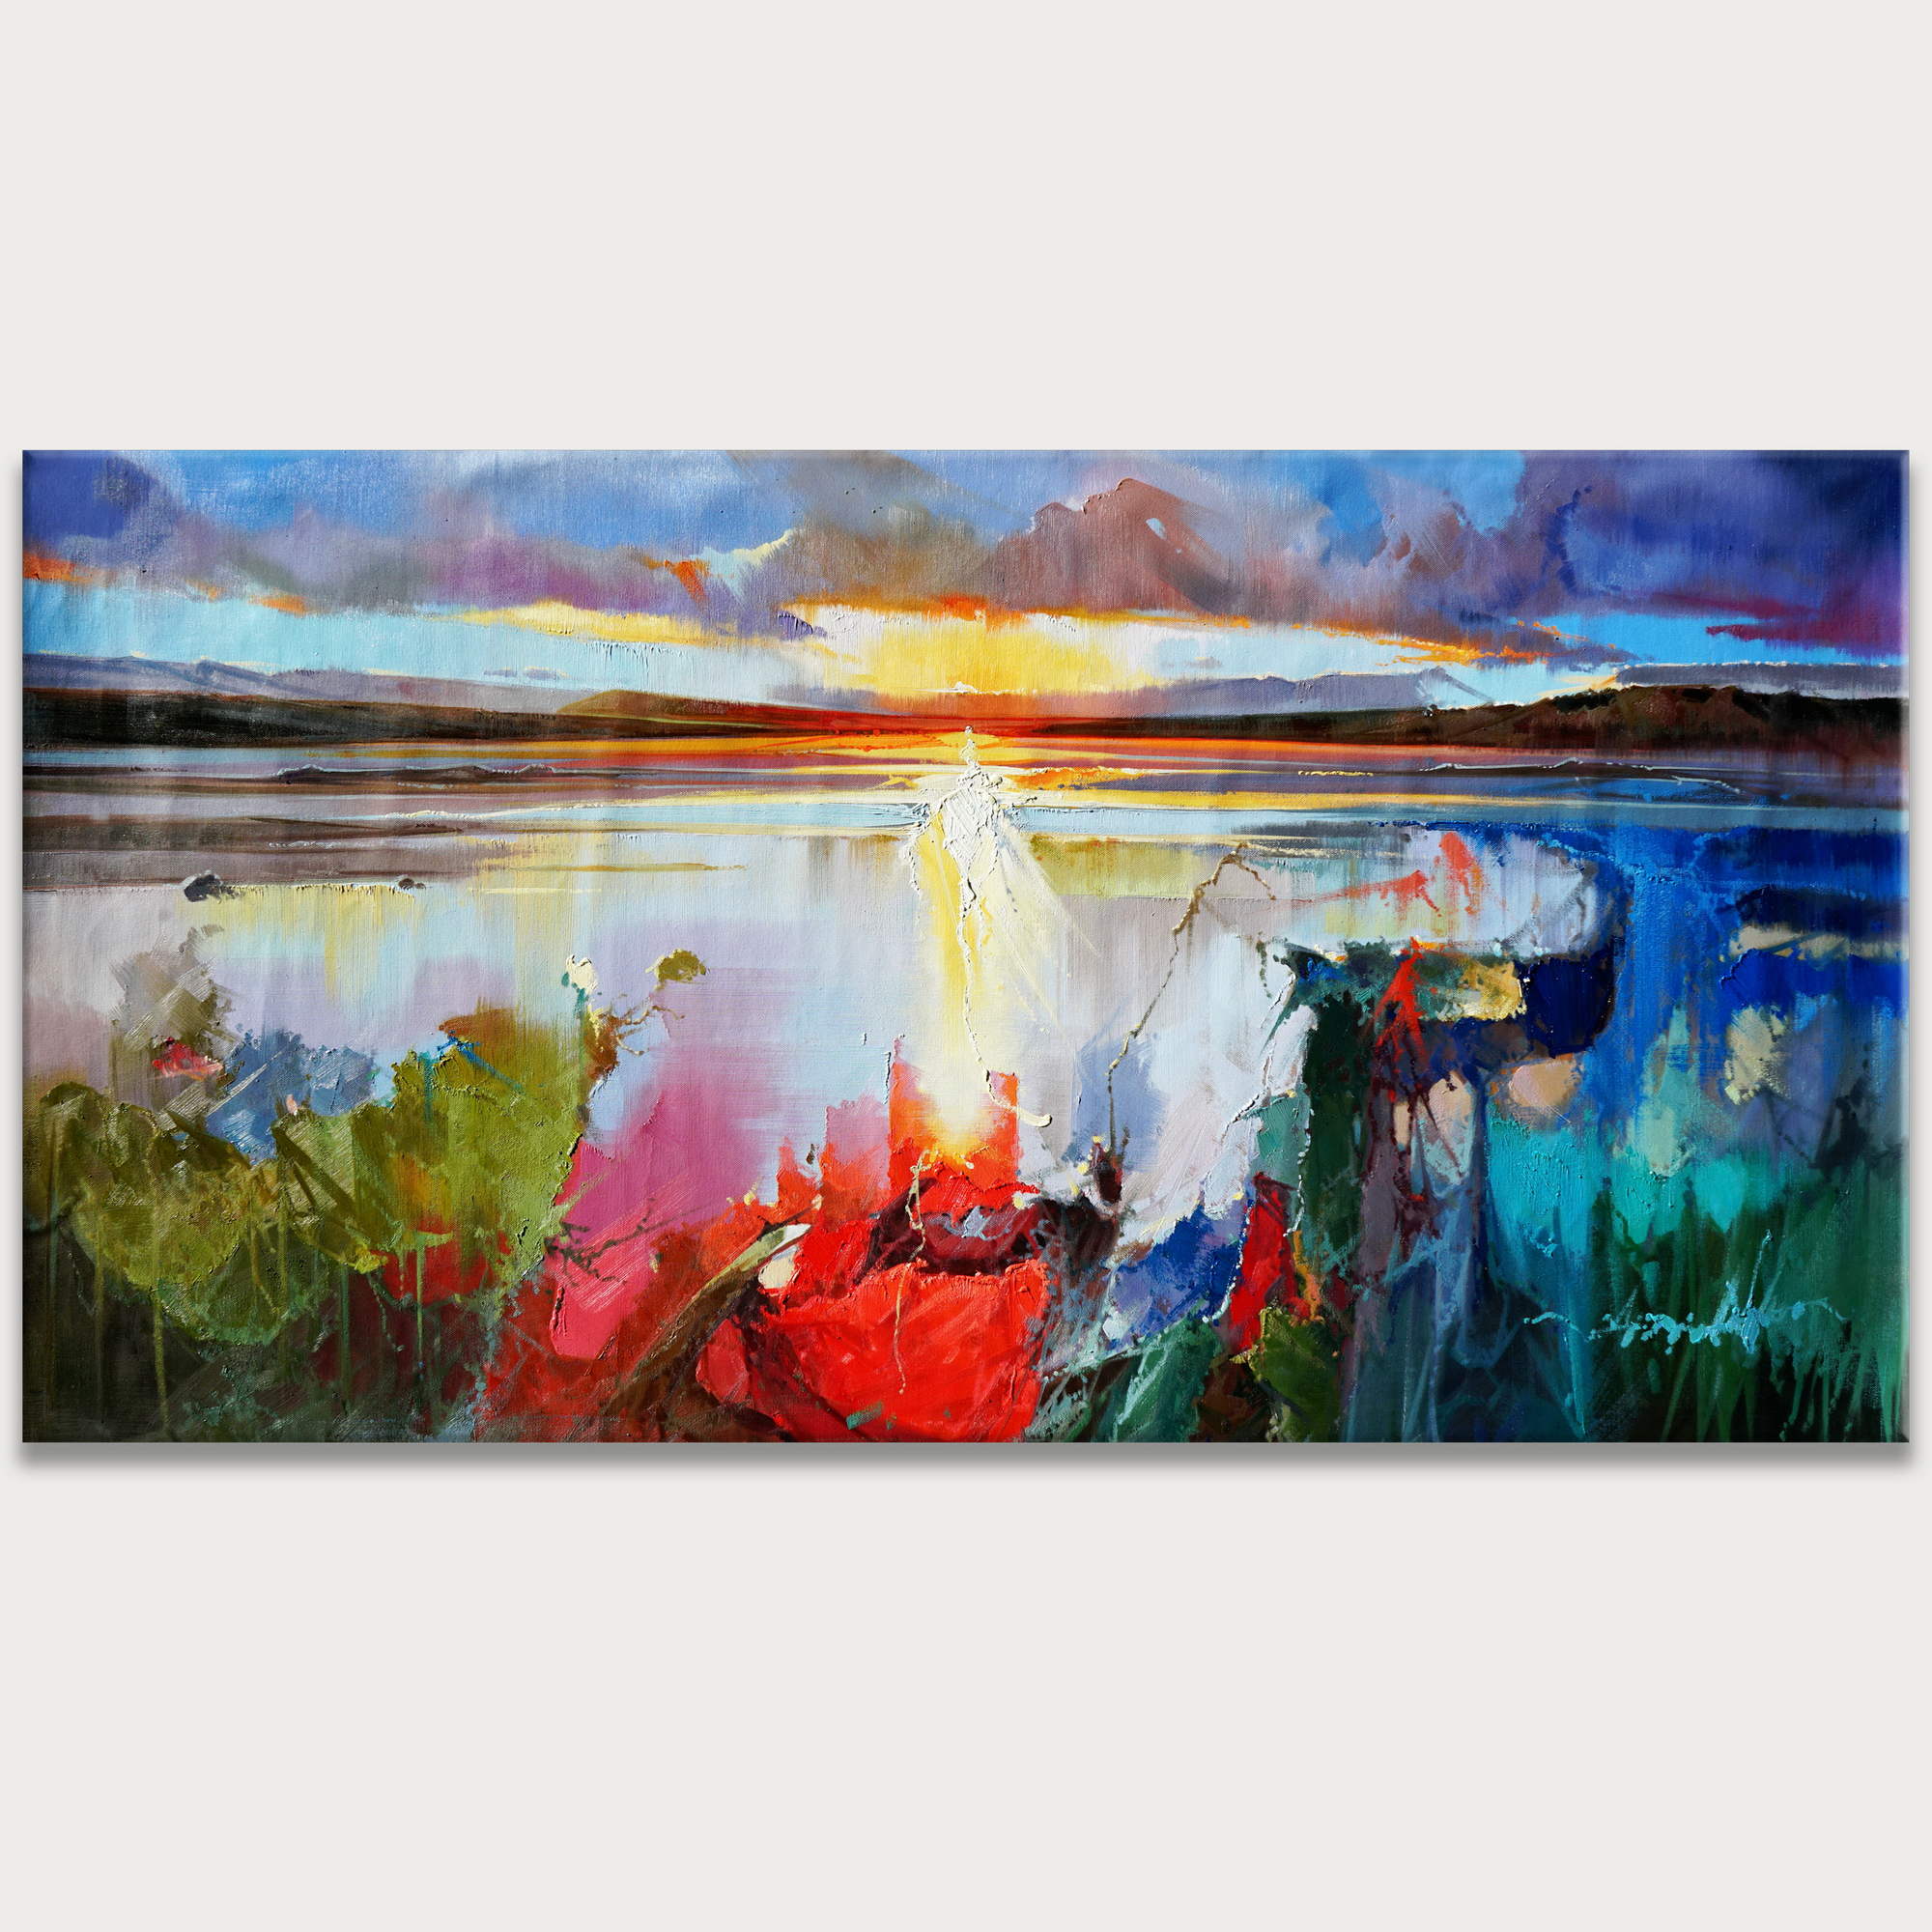 Dipinto a mano Paesaggio Astratto al tramonto 90x180cm